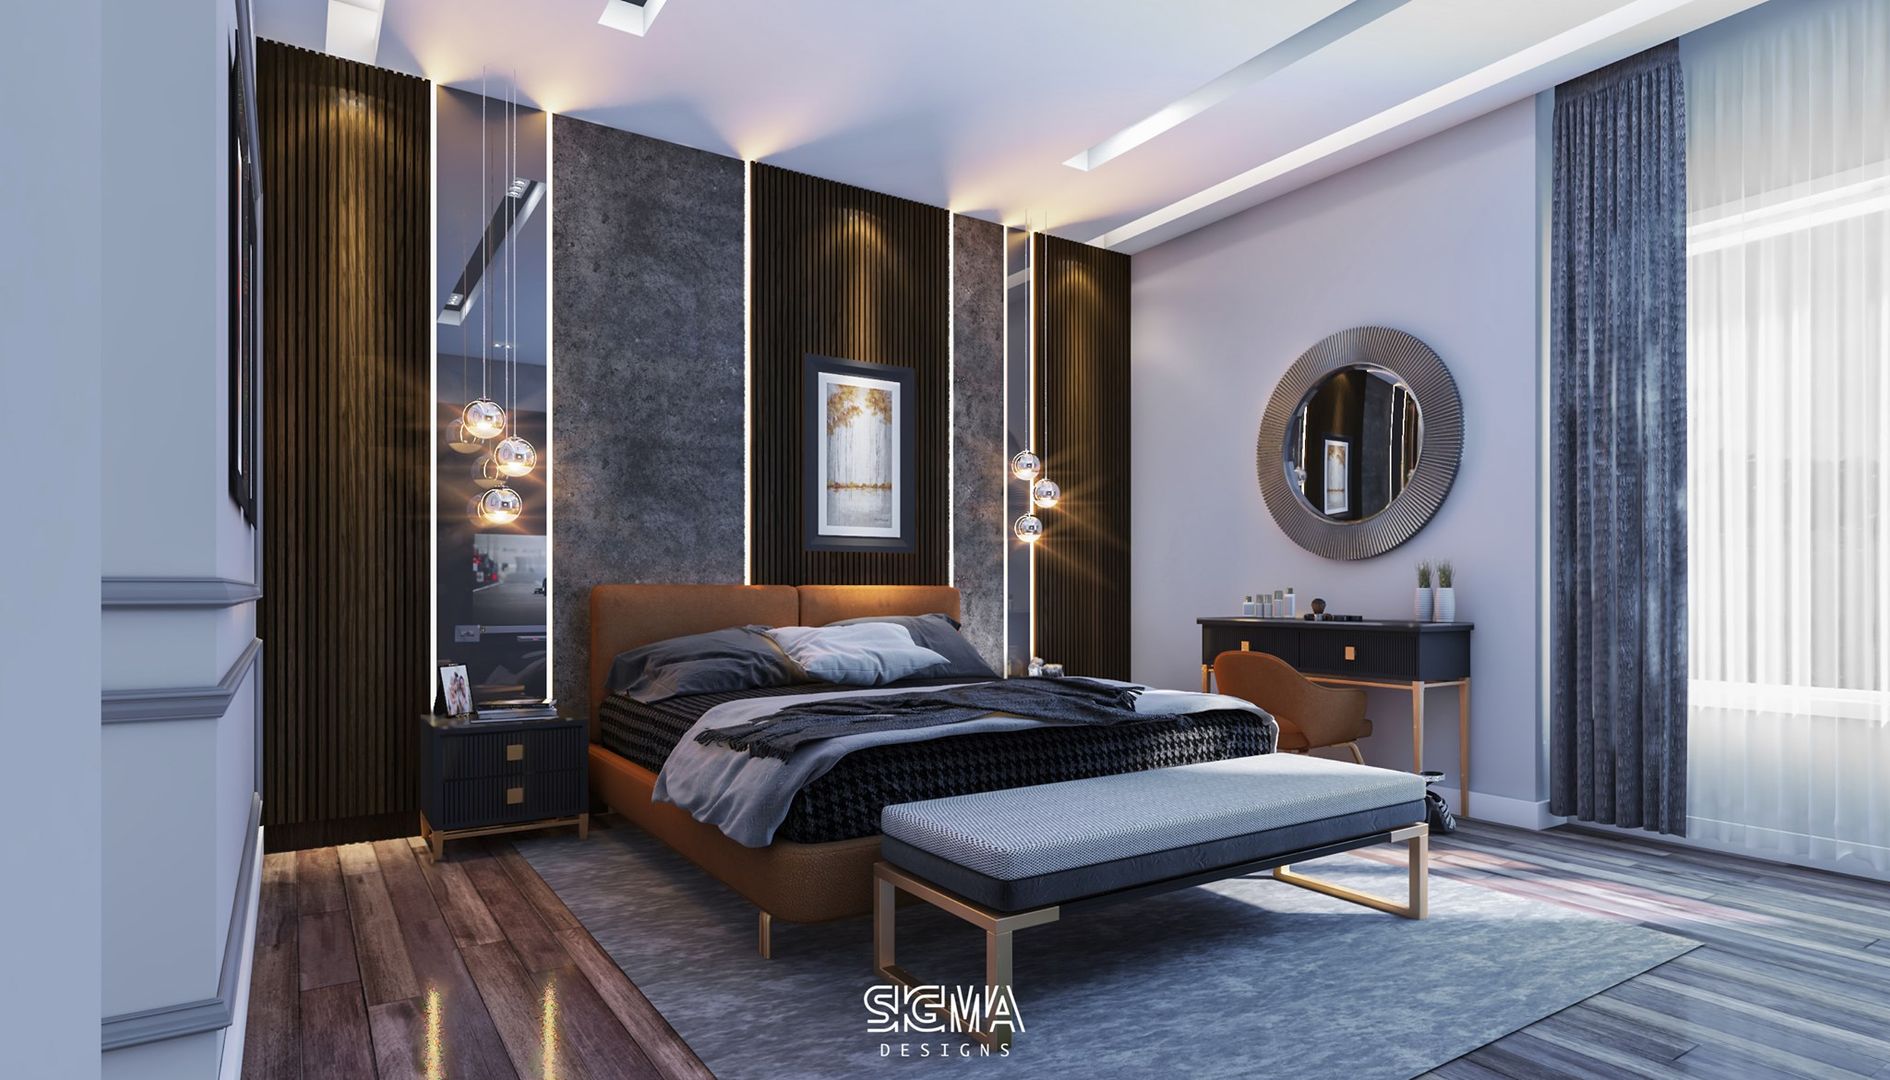 شقة سكنية خاصة - القاهرة الجديدة, SIGMA Designs SIGMA Designs Dormitorios de estilo moderno